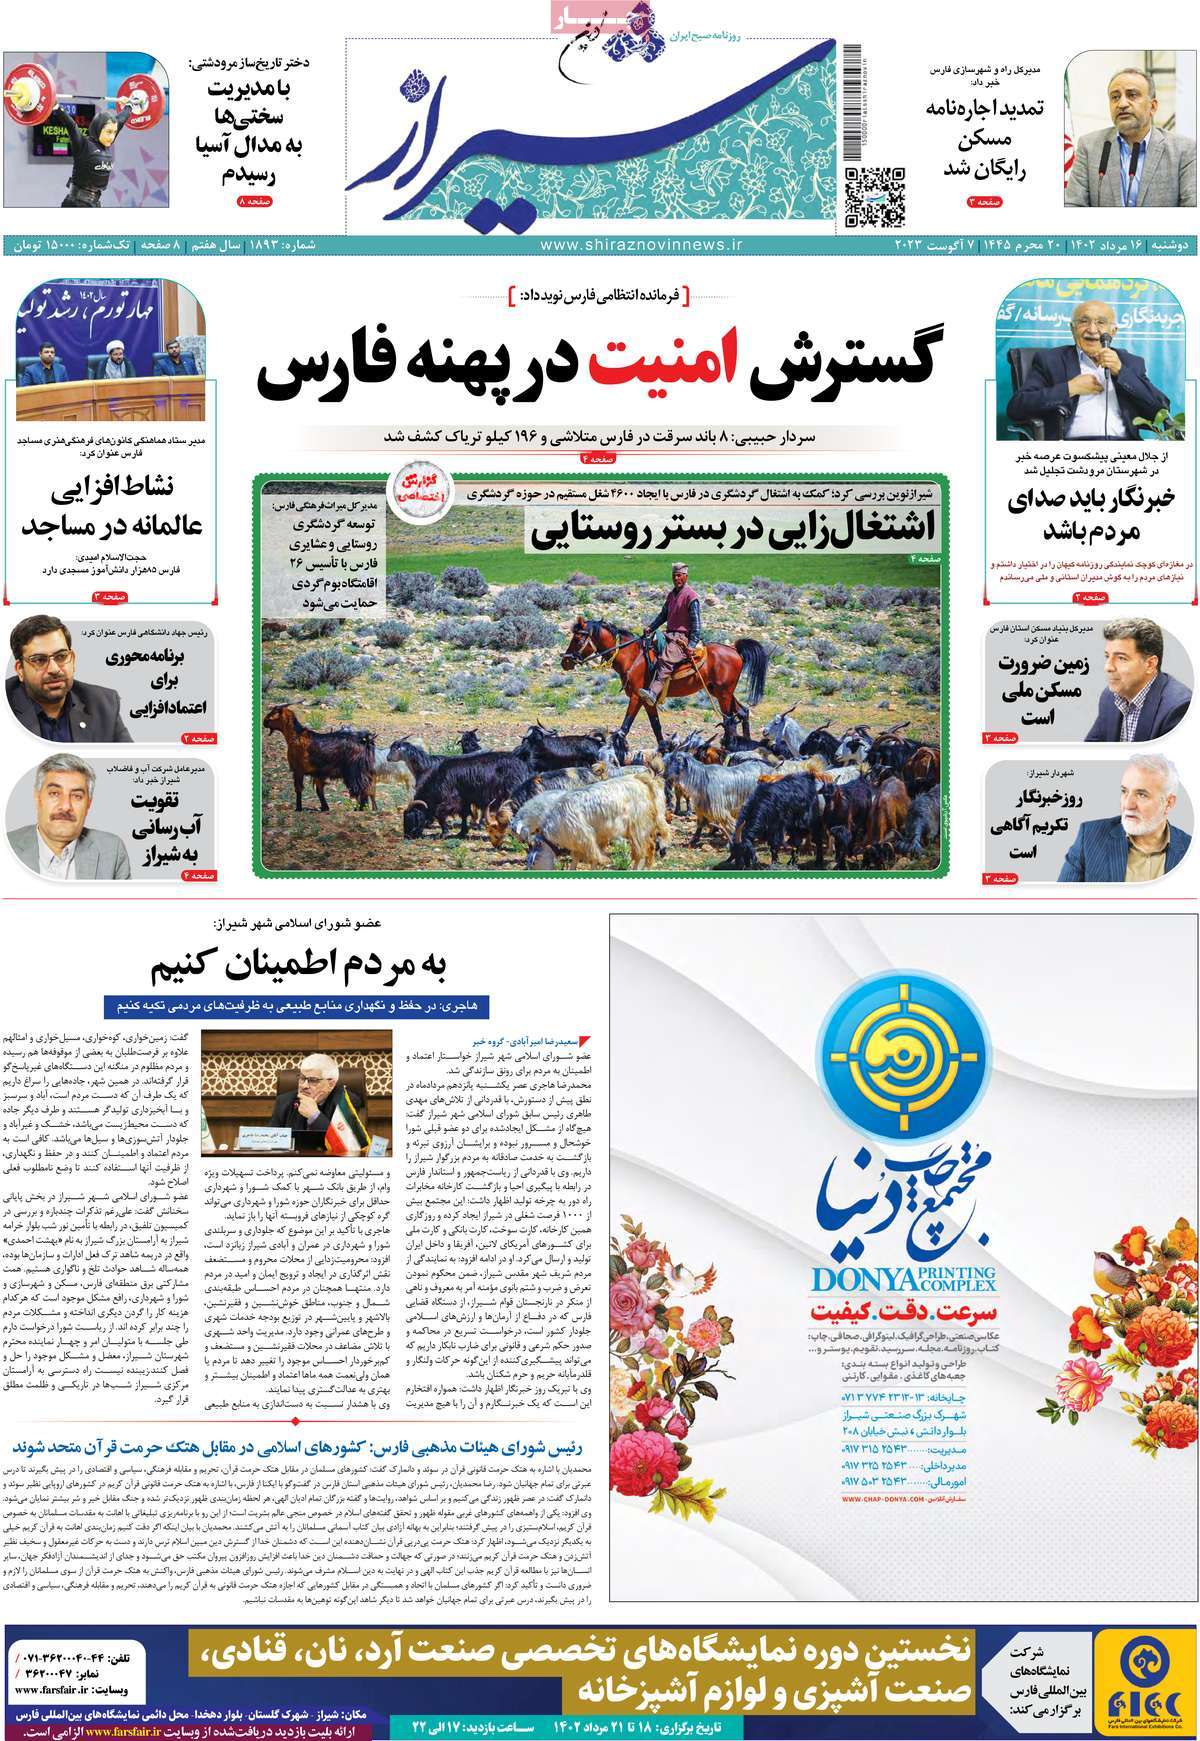 صفحه اول روزنامه های استانی امروز / روزنامه شیراز نوین